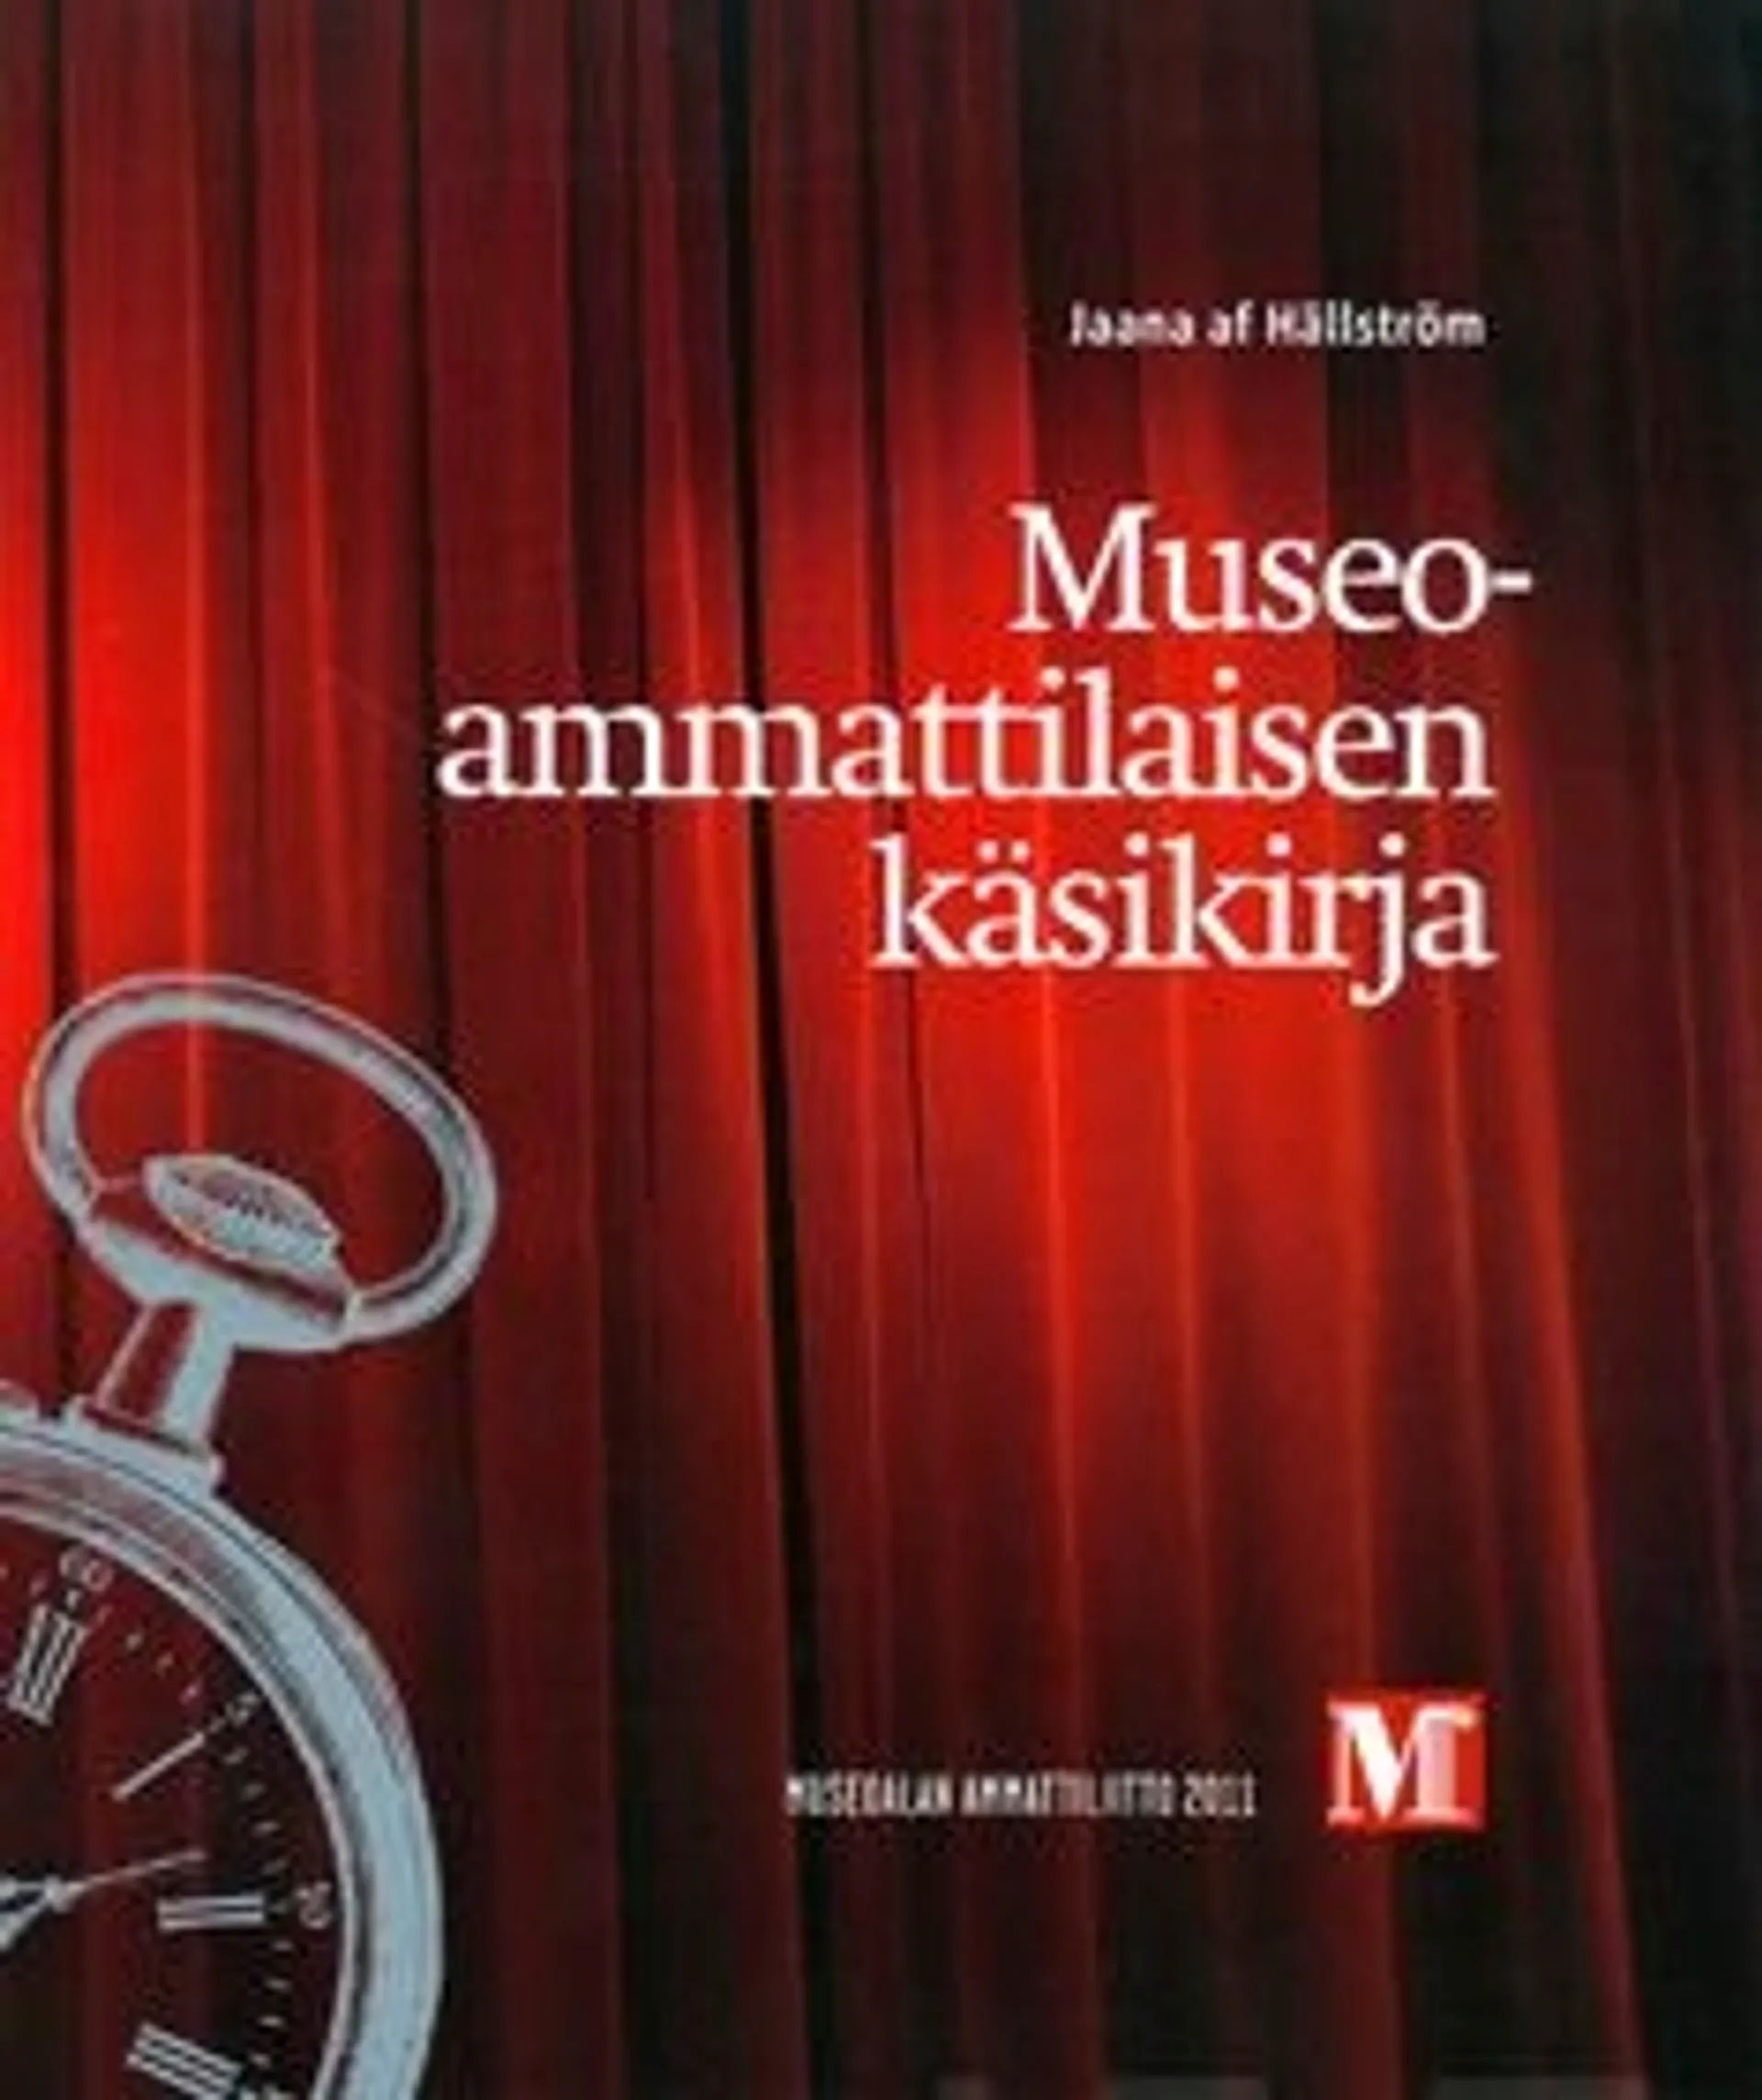 Hällström, Museoammattilaisen käsikirja